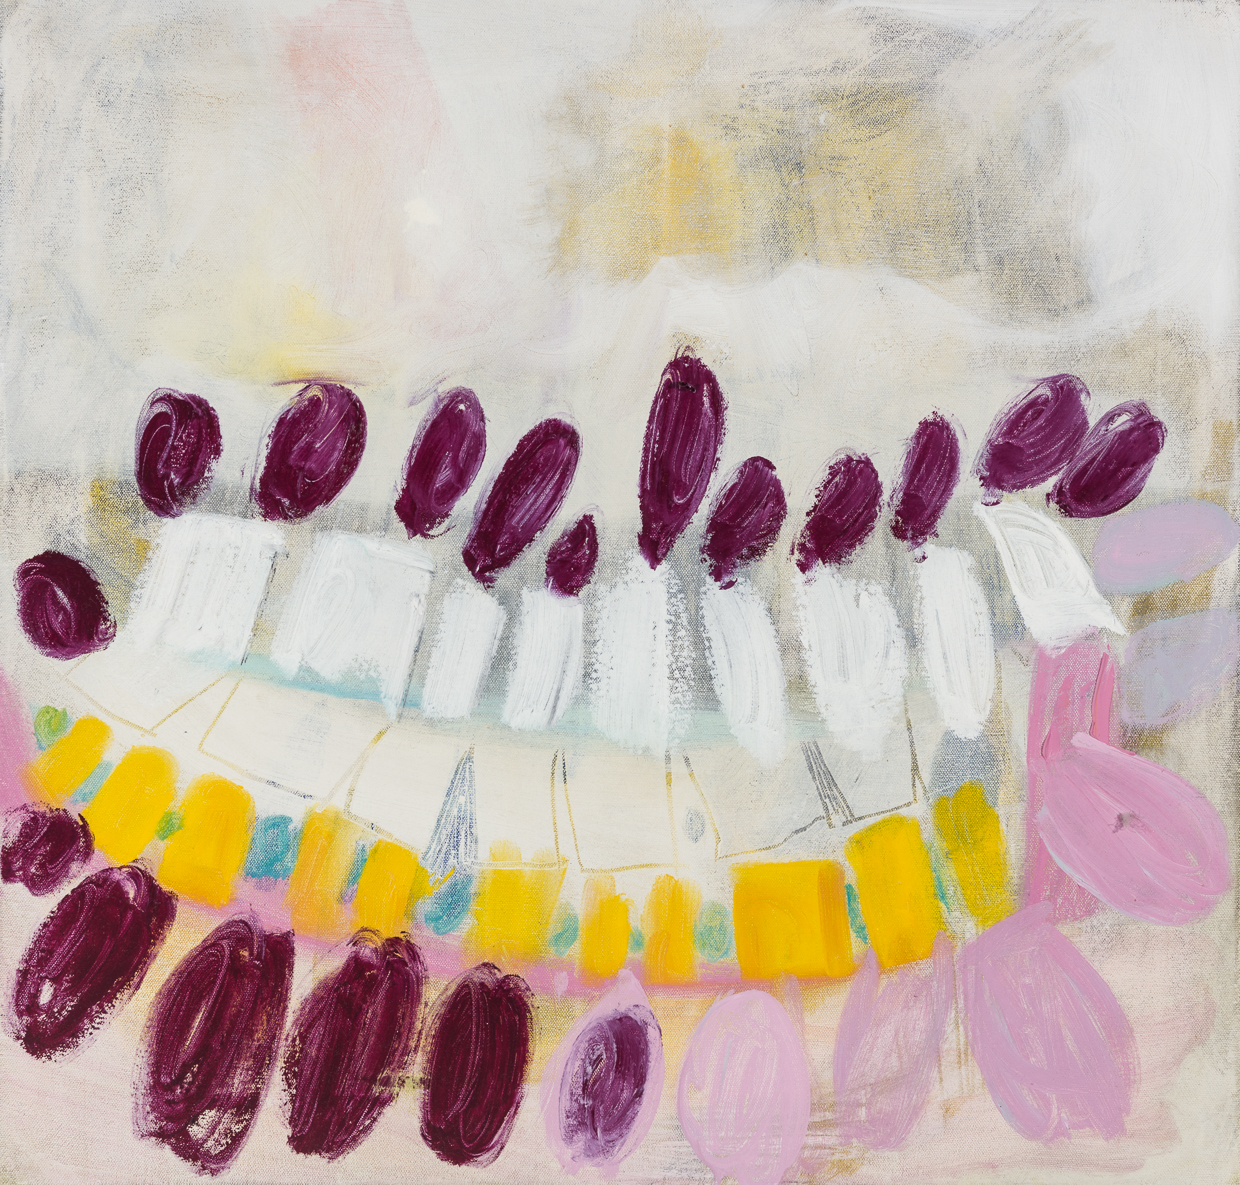  Flower Teeth, 2017. 24" x 25", oil on canvas.  